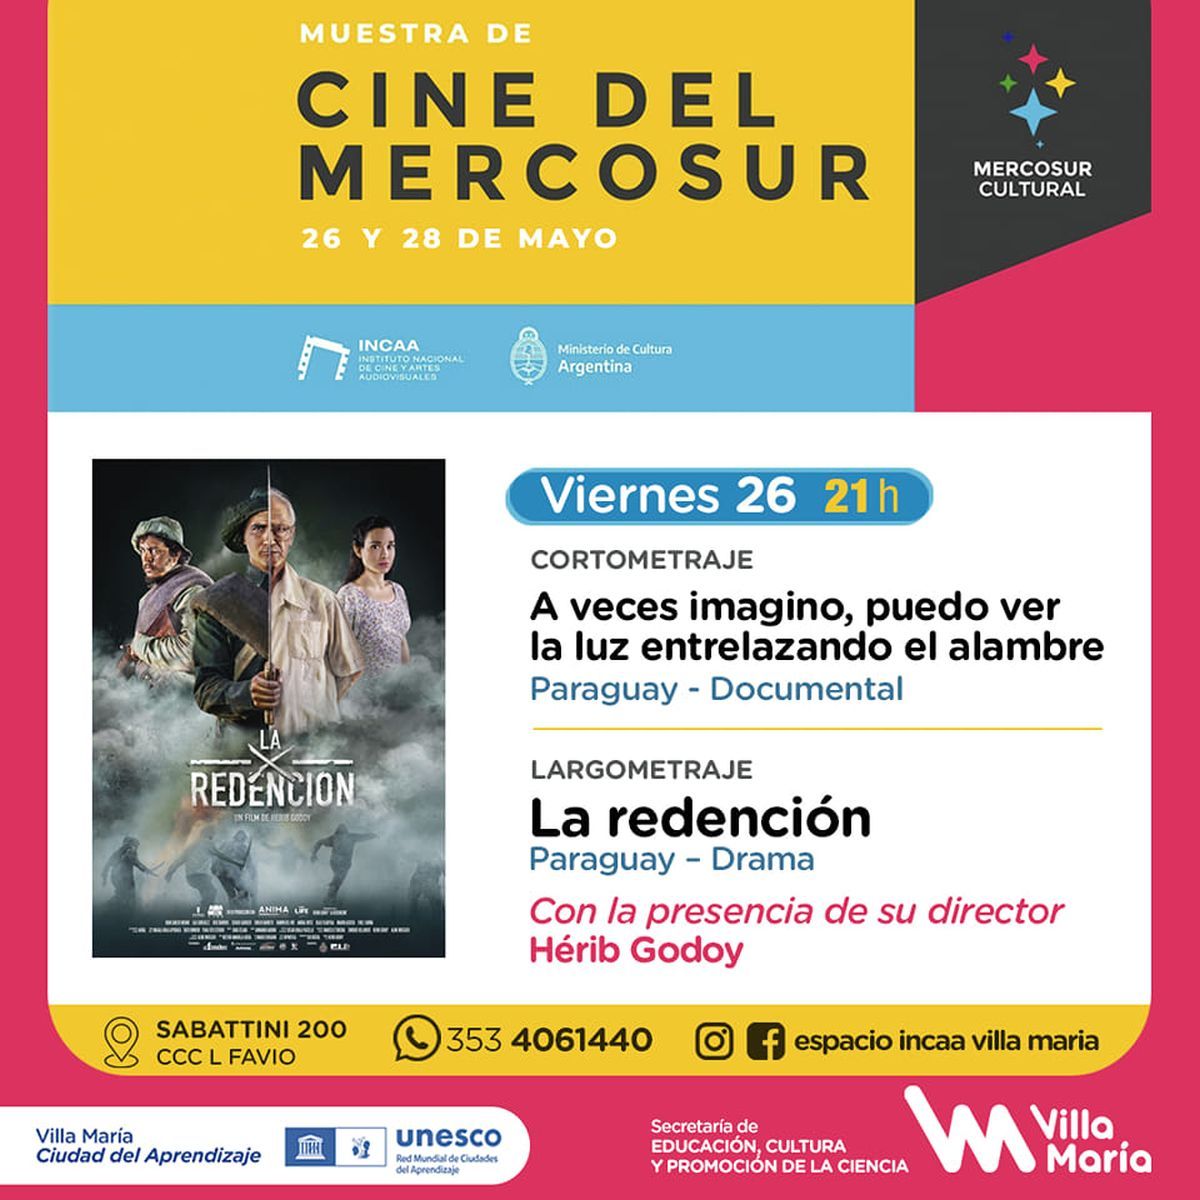 Habrá función en el Espacio INCAA con la Muestra de Cine del Mercosur